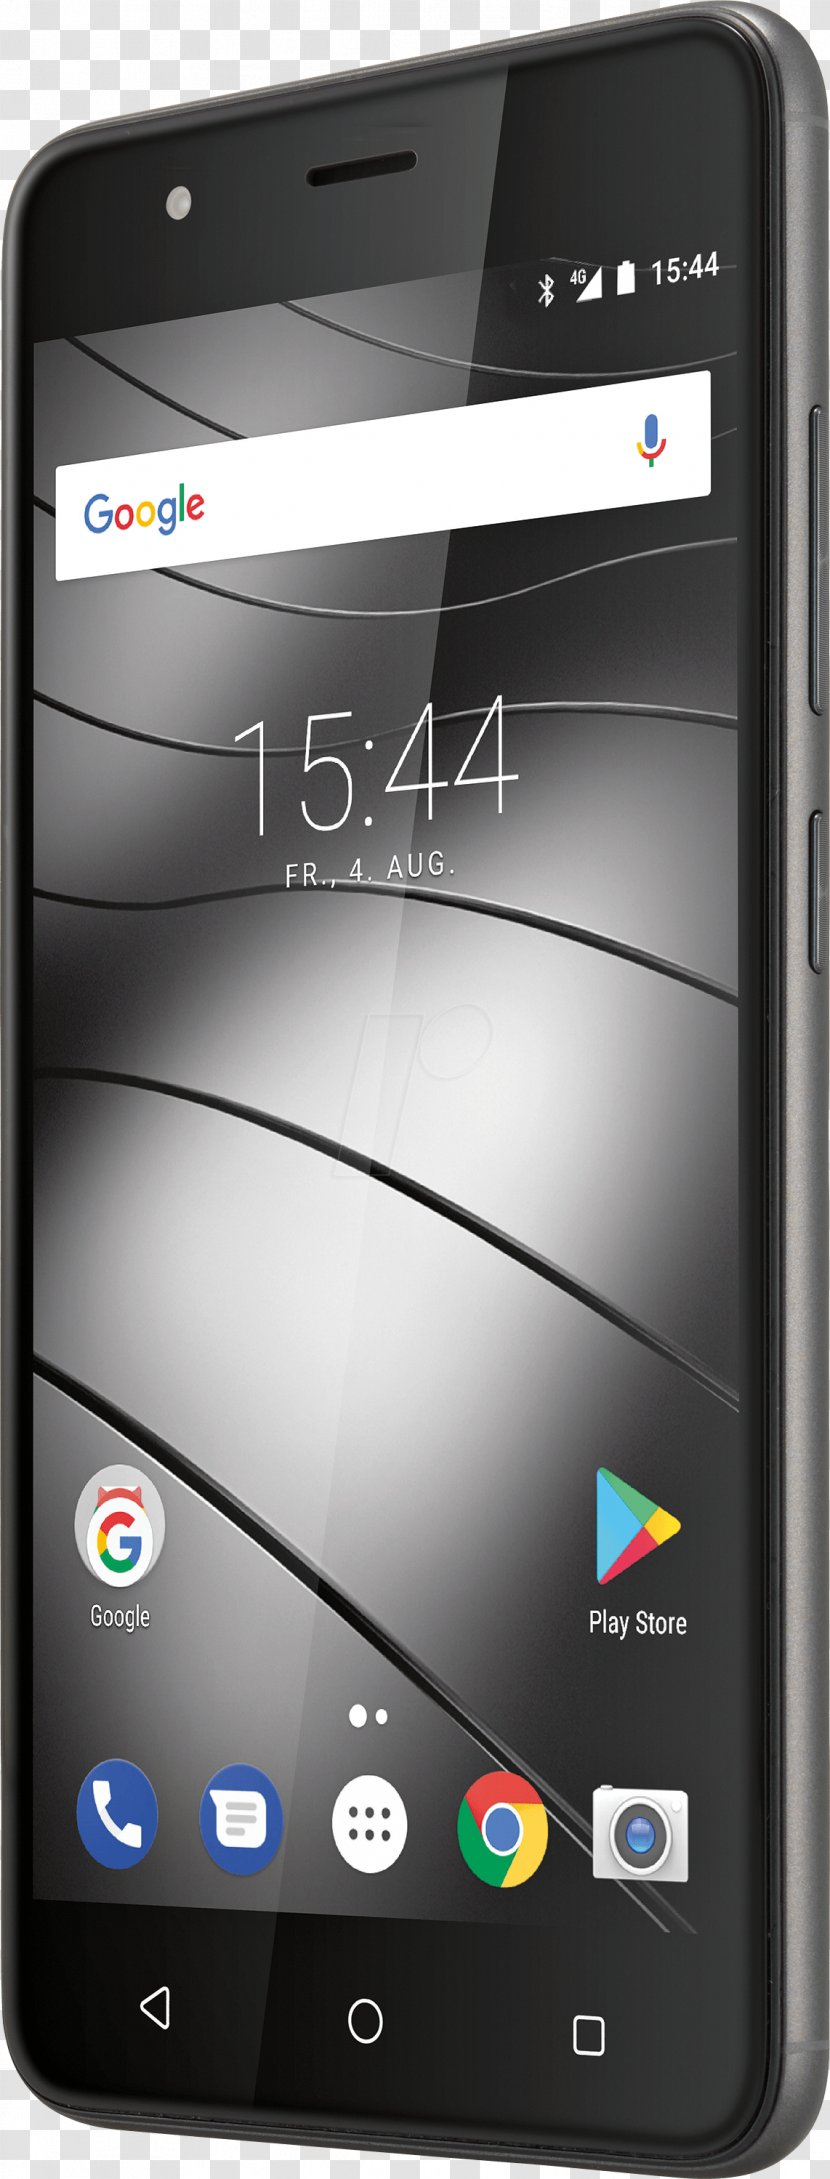 Gigaset GS170 LTE Smartphone 12.7 Cm 1.3 GHz Quad Core 16 GB 13 MPix Android 7.0 Nougat Black Telephone MediaTek - Communication Device Transparent PNG